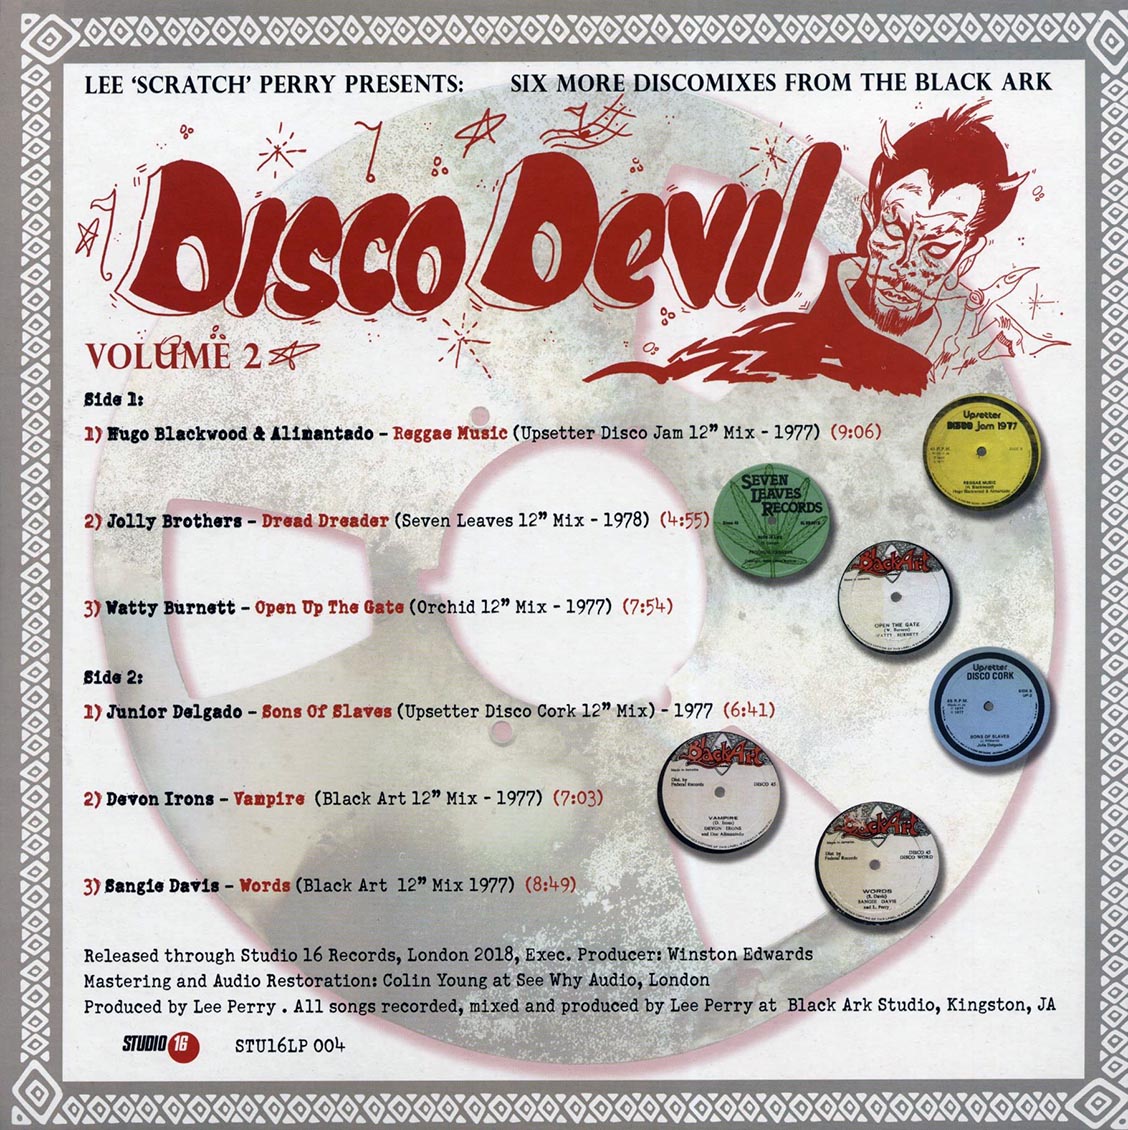 Lee 'Scratch' Perry - Disco Devil Vol. 2 [2019 New Vinyl Record LP]